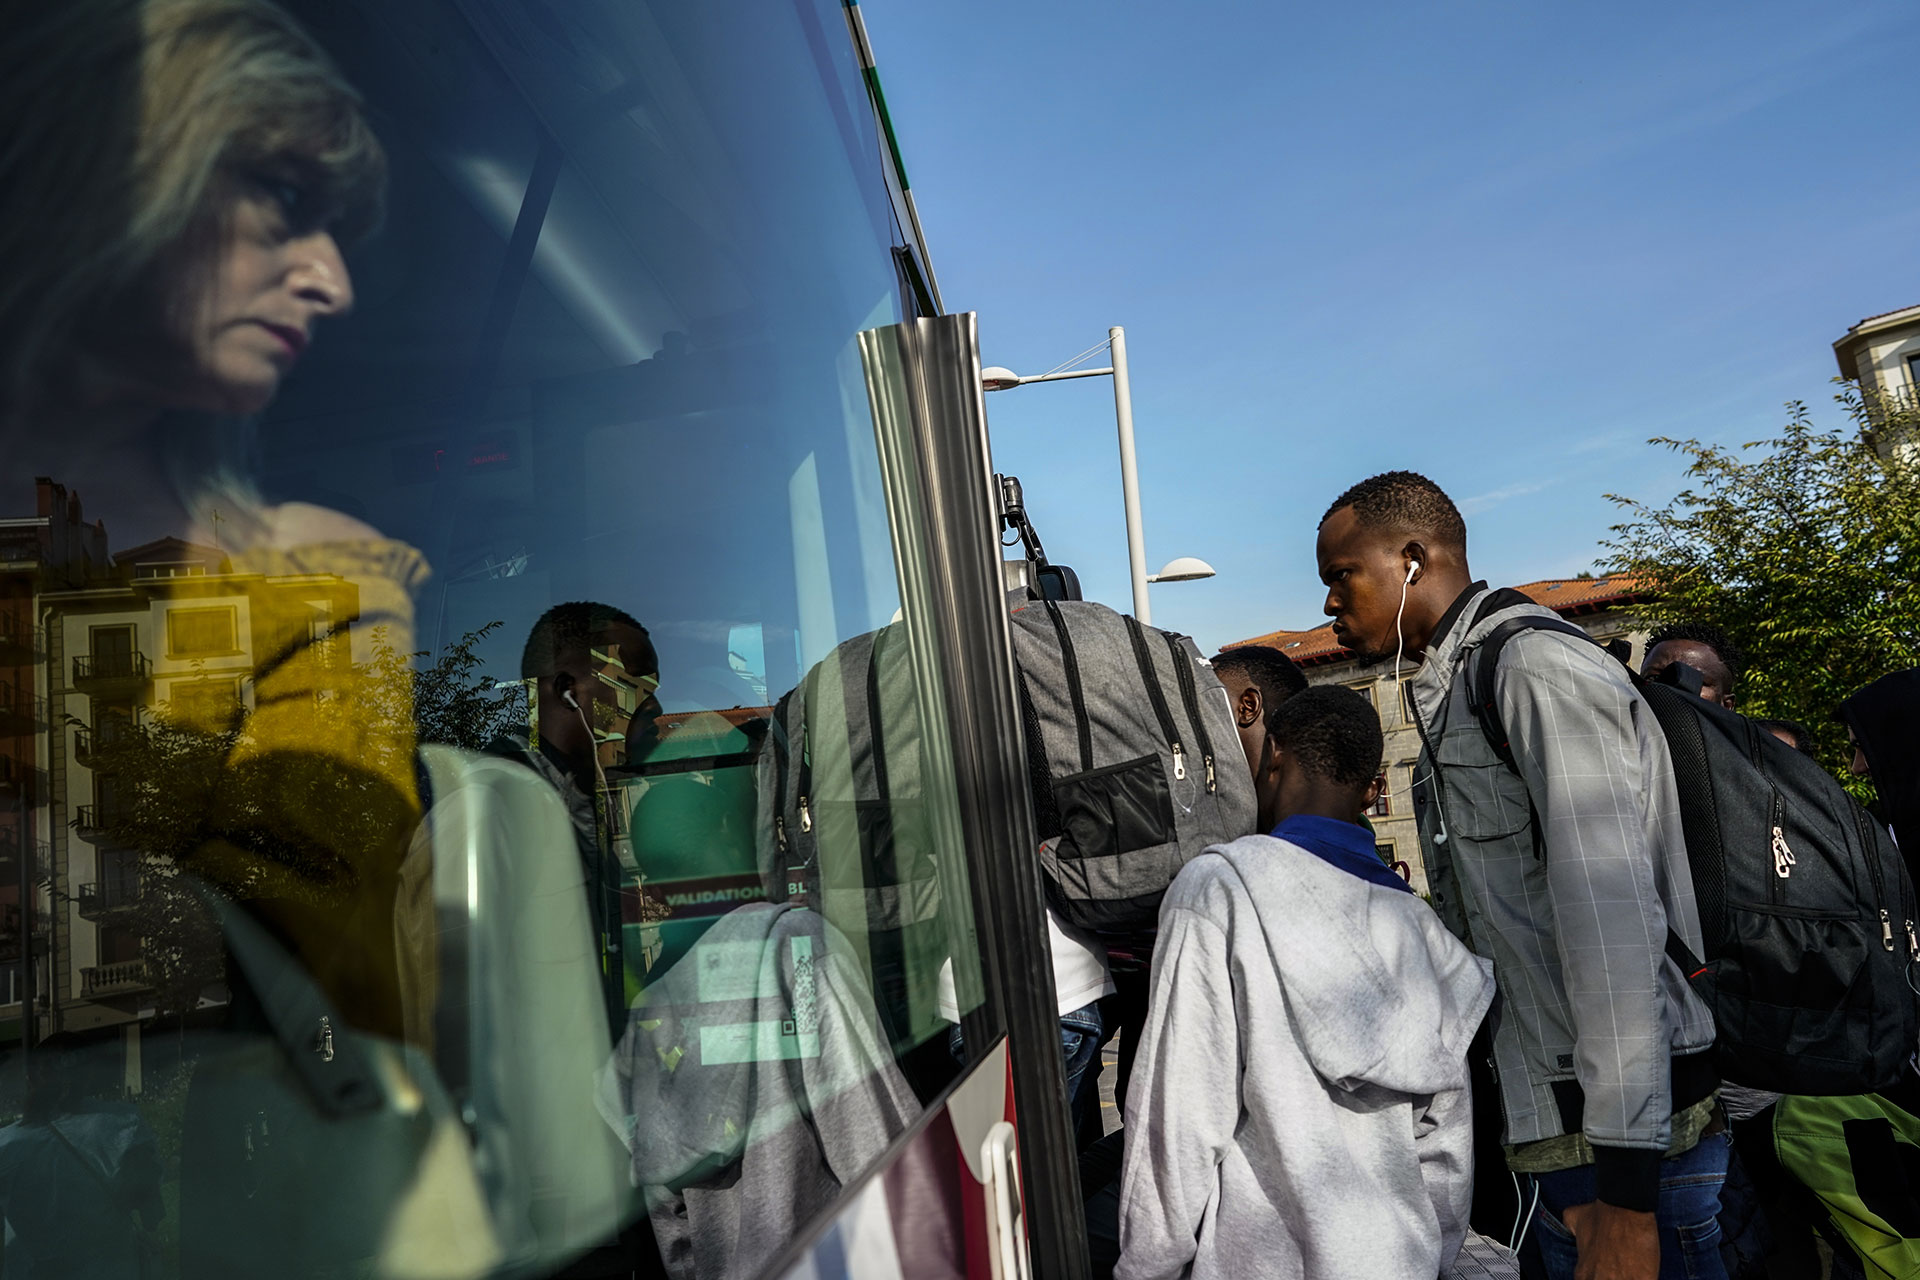 Un grupo de jóvenes suben a un autobús en Irún para intentar cruzar la frontera y llegar a Francia, 14 de Septiembre de 2019.